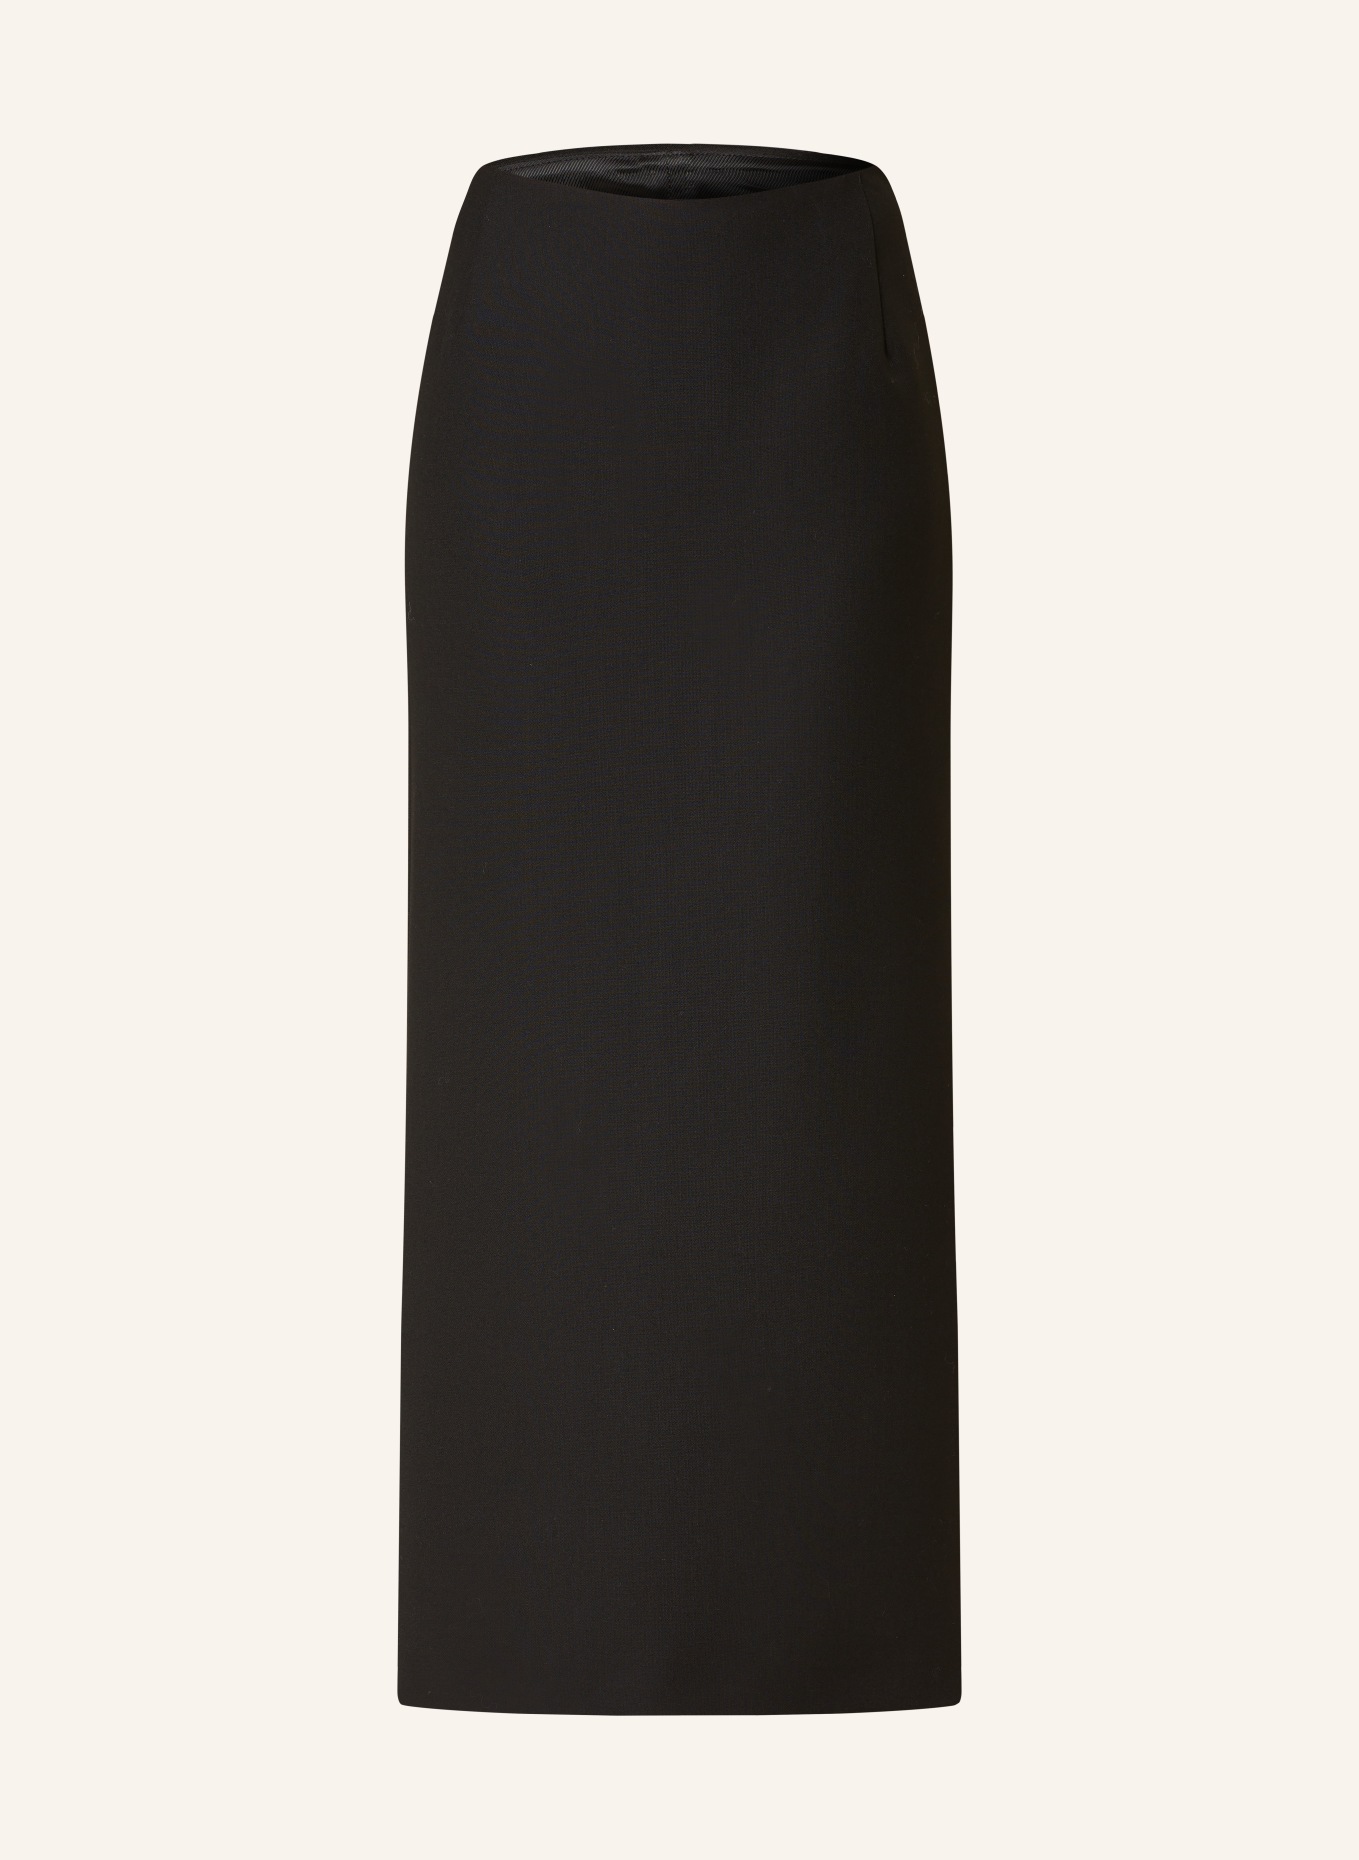 RÓHE Skirt, Color: BLACK (Image 1)